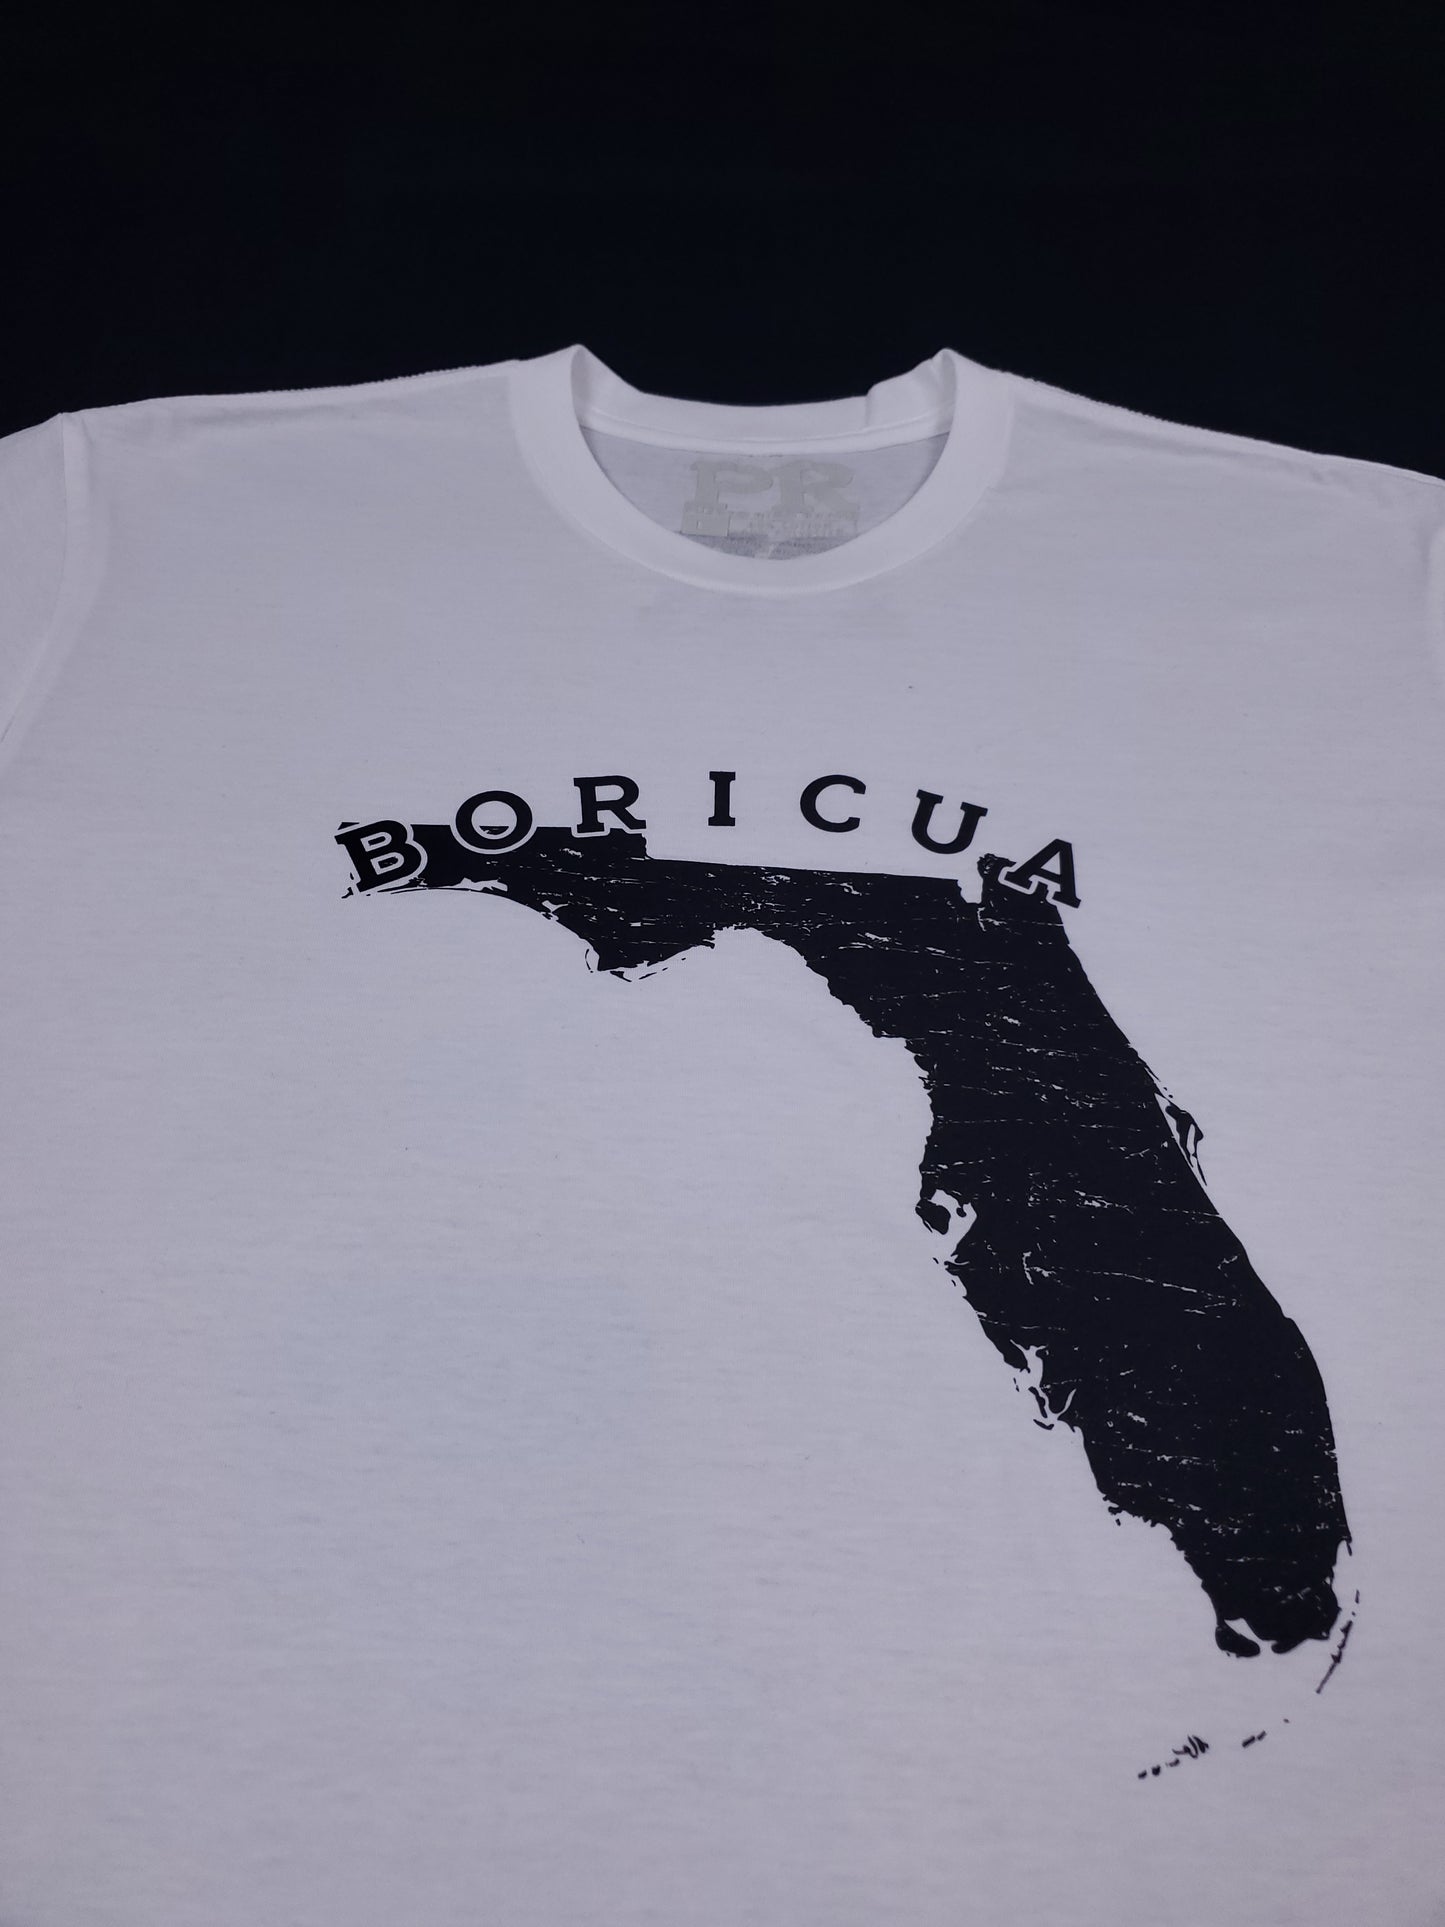 Boricua - Florida